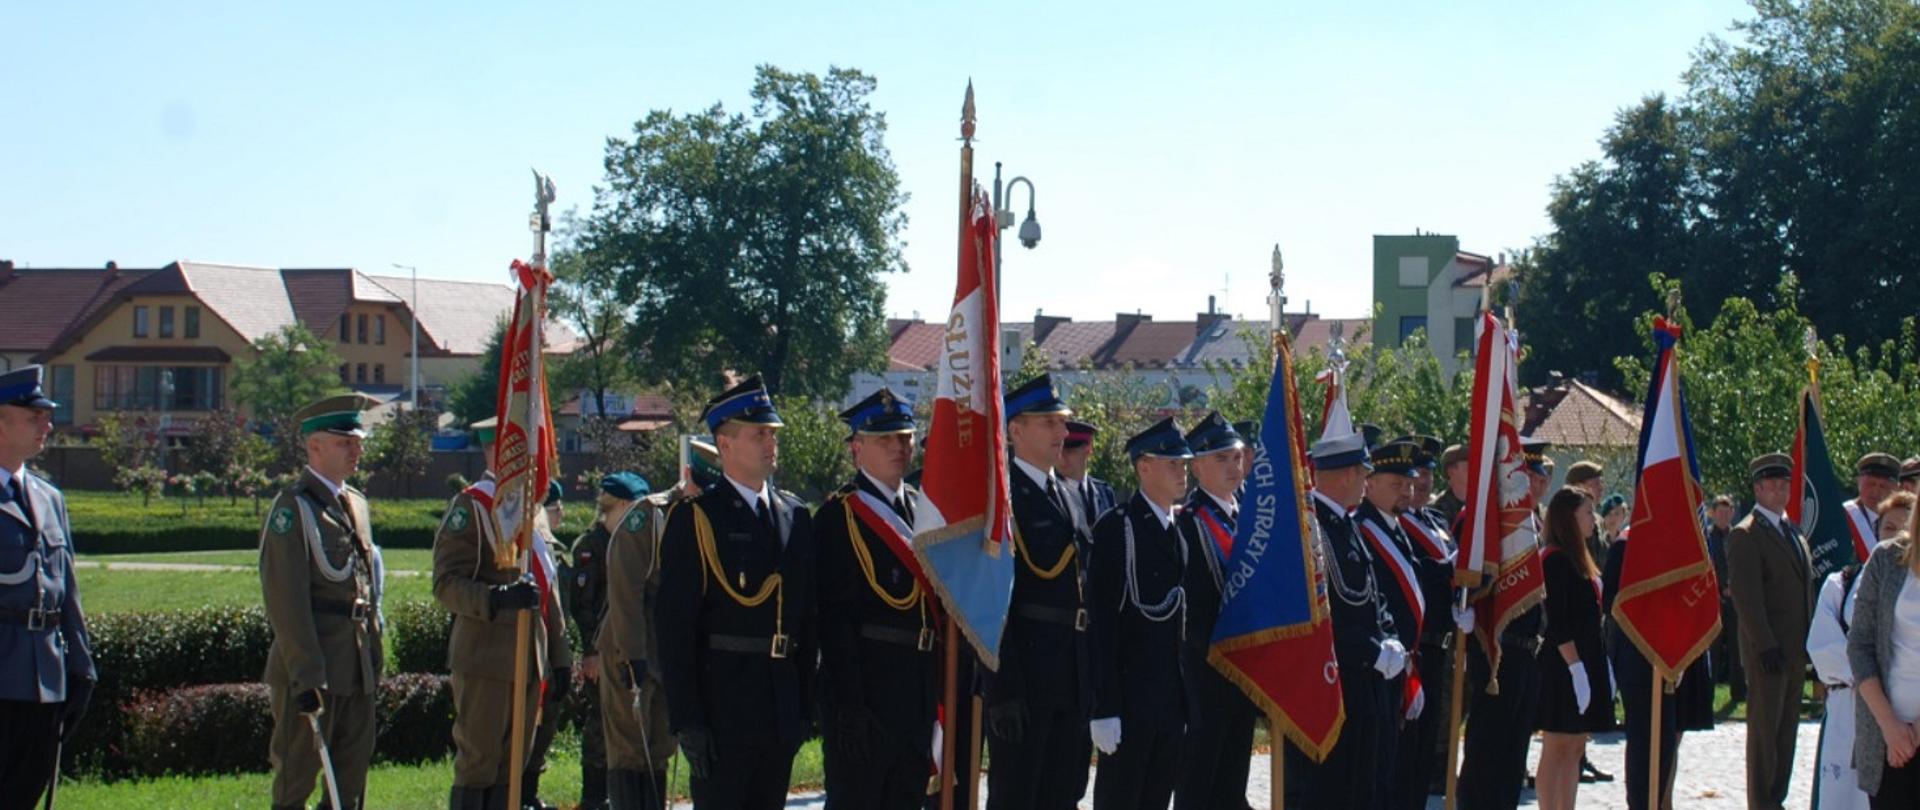 Na zdjęciu znajdują się sztandary straży oraz innych służb mundurowych z asystą funkcjonariuszy w mundurach galowych stojący na baczność.